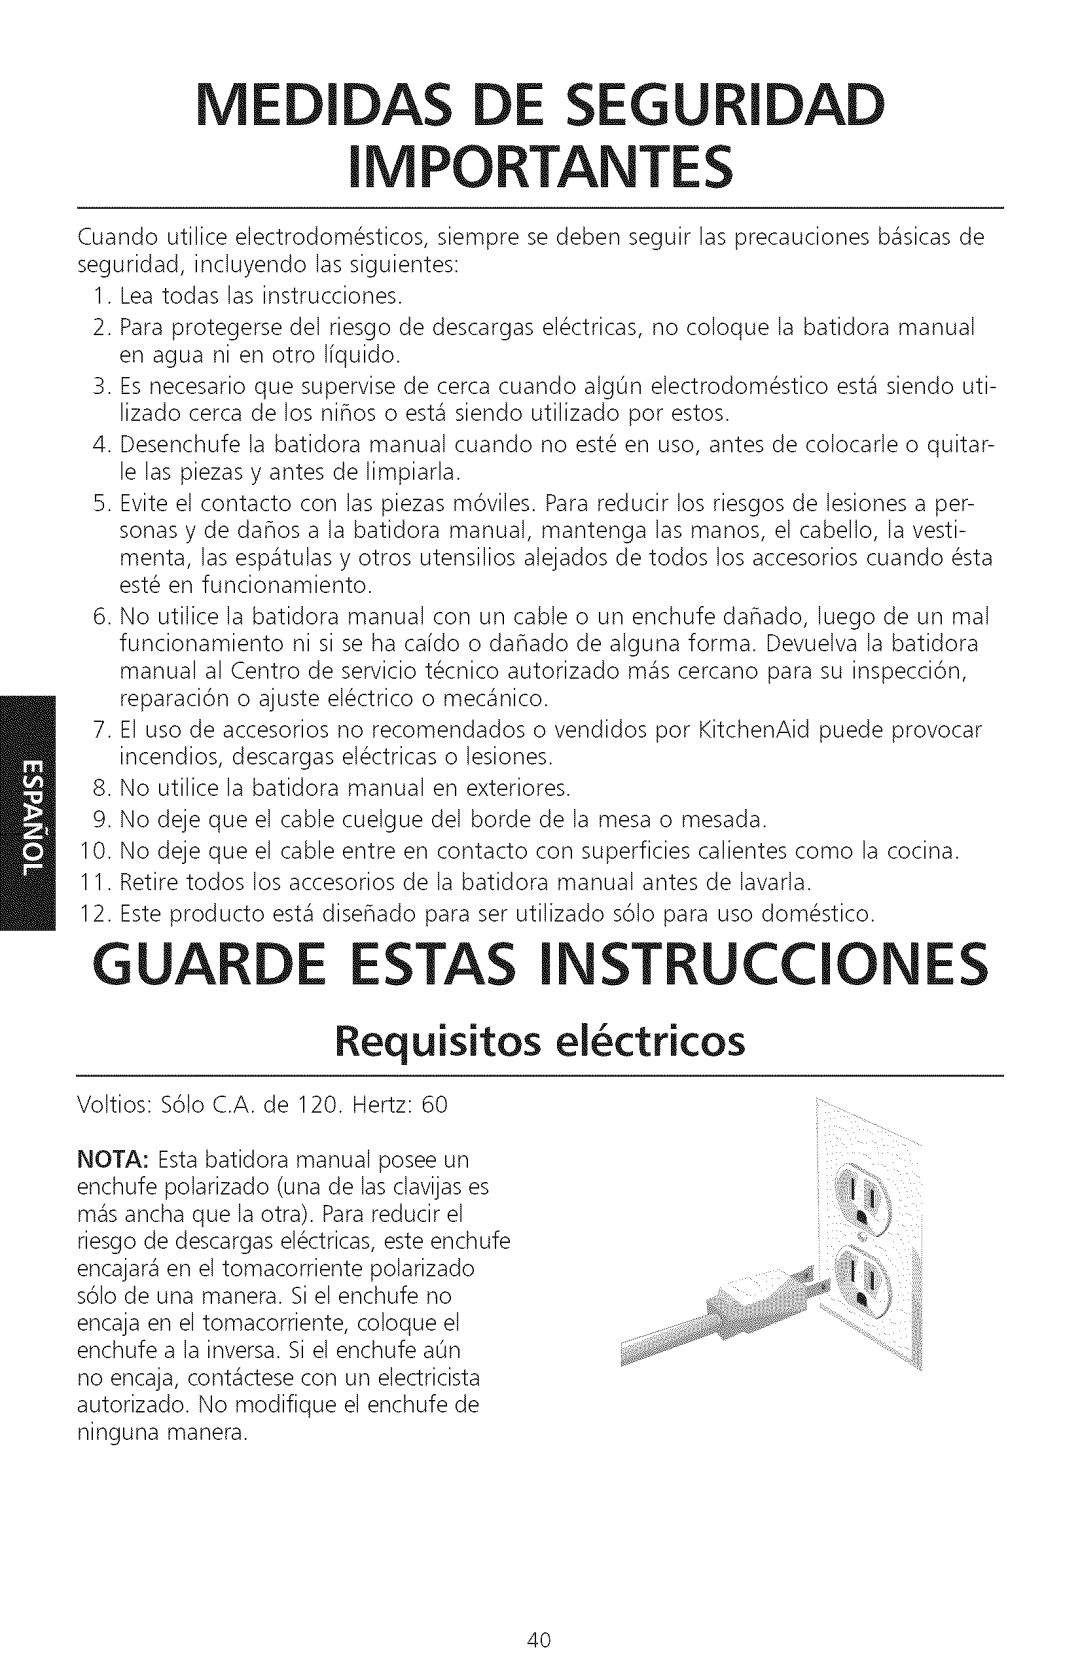 KitchenAid KHM920, KHM720 manual Medidas De Seguridad Importantes, Guarde Estas Instrucciones, Requisitos ei ctricos 